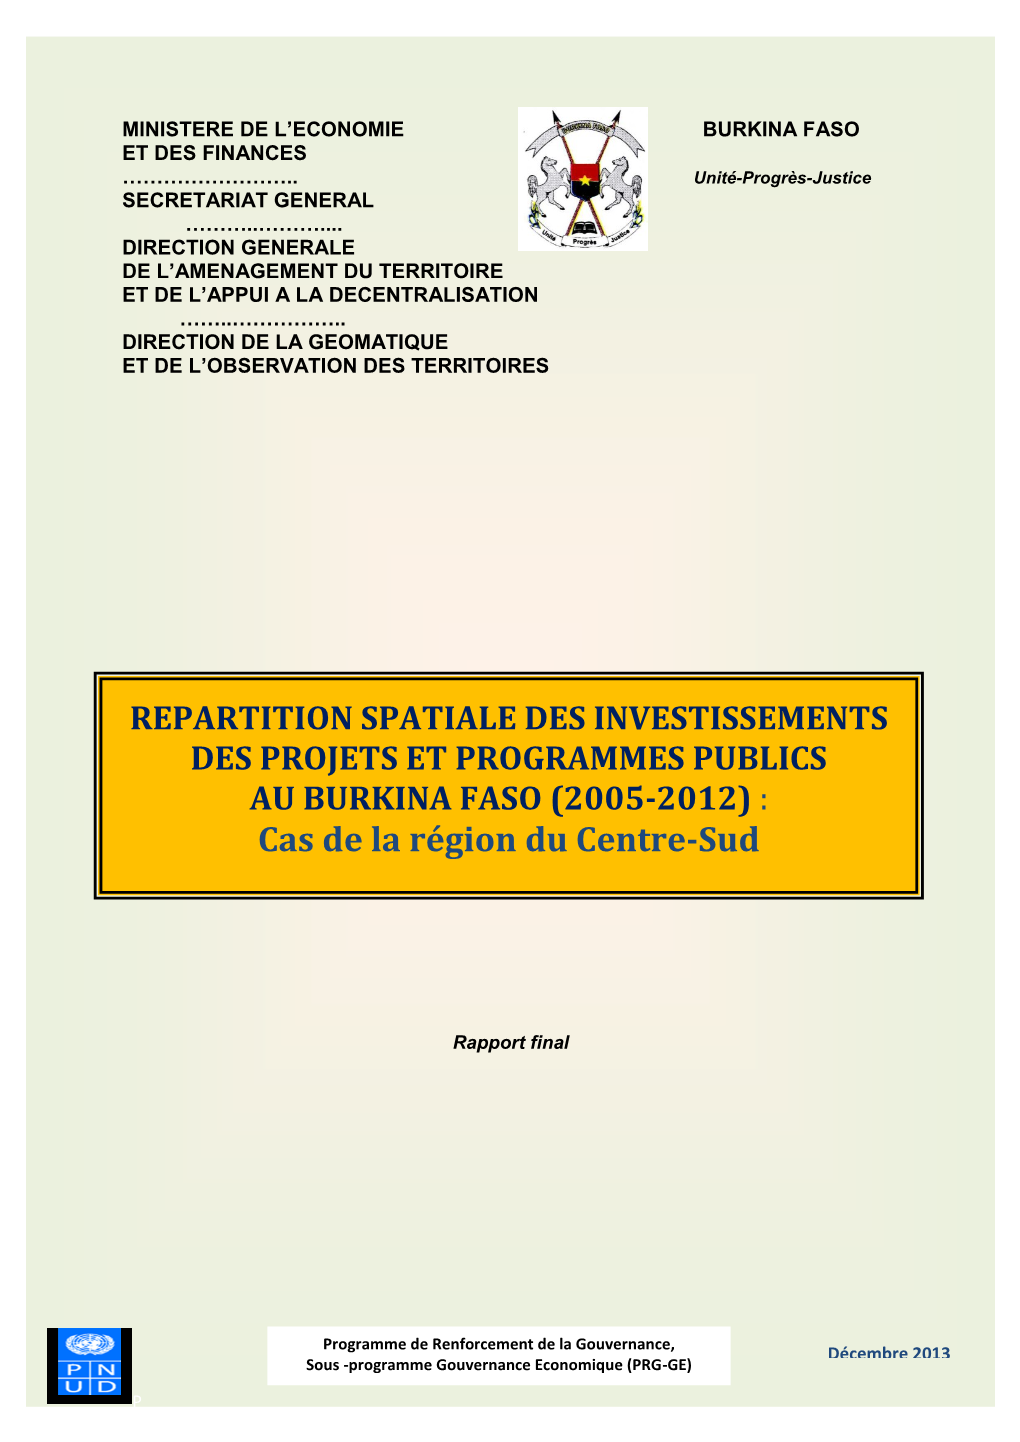 Epartition Spatiale Des Investissements Des Projets Et Programmes De La Region Du Centre-Sud